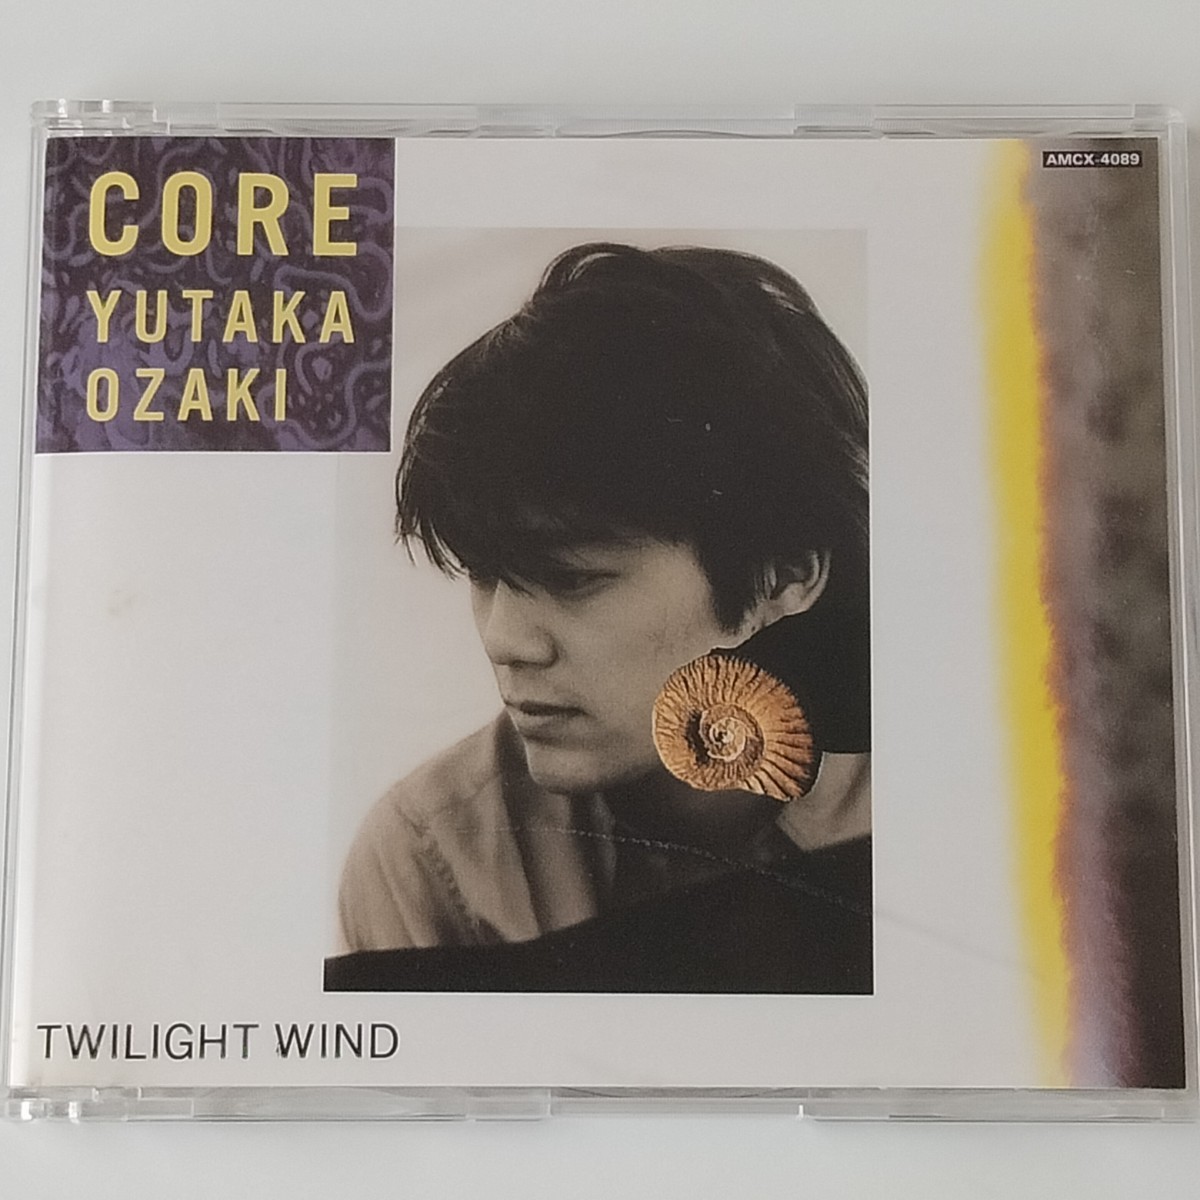 【帯付CDシングル】尾崎豊 / CORE / TWILIGHT WIND (AMCX-4089) YUTAKA OZAKI / 核 街角の風の中 1990年シングルの画像2